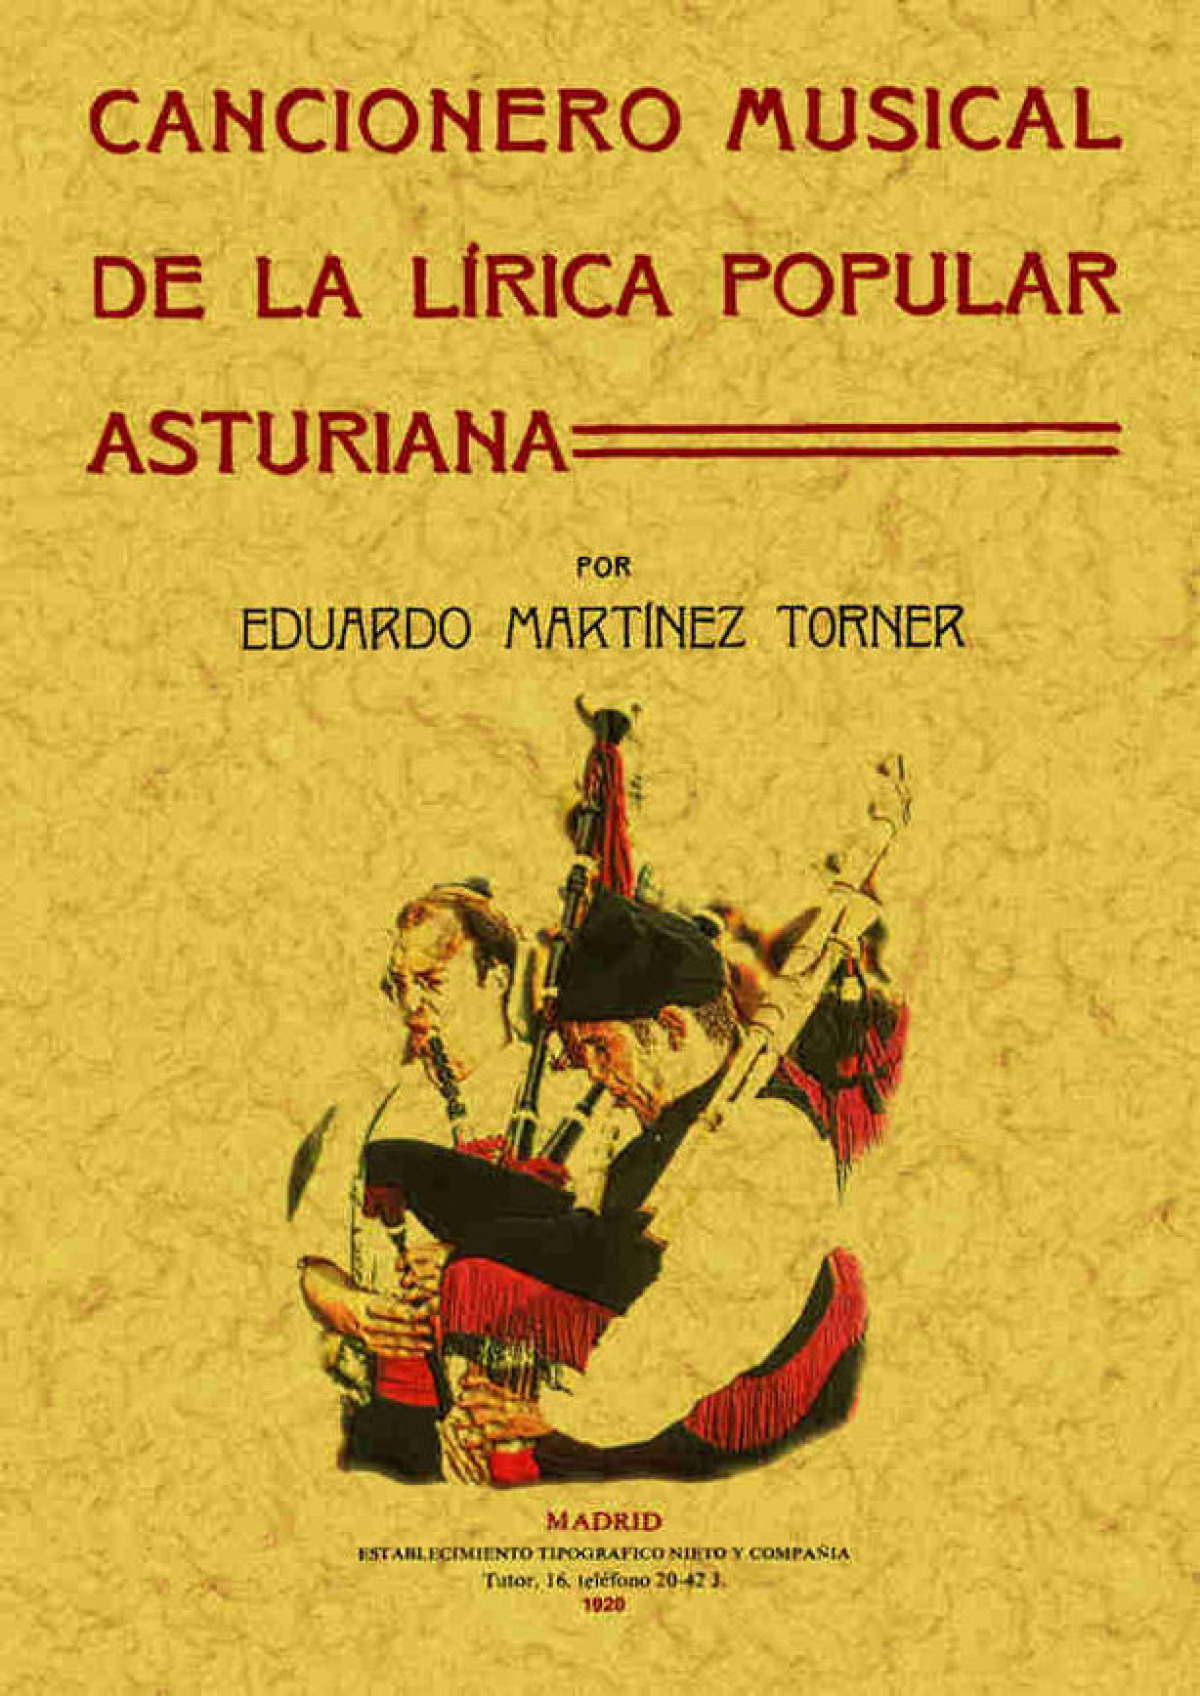 Cancionero musical asturiano - Martínez Torner, Eduardo